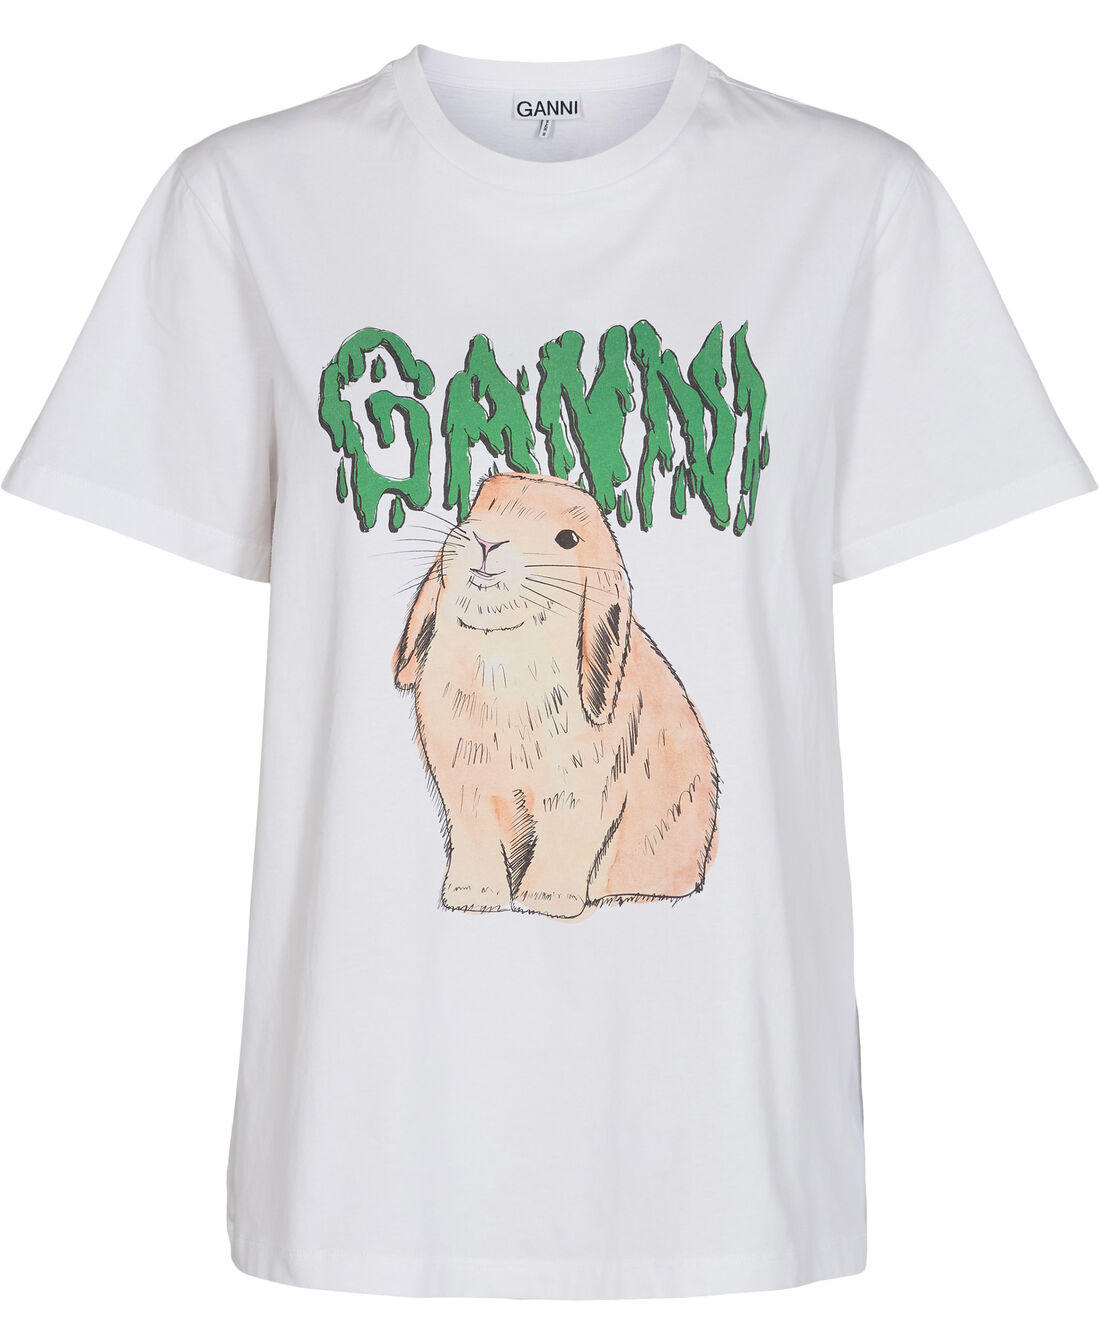 T-shirt, Bunny fra Ganni | 0.0 N/A | Magasin.dk